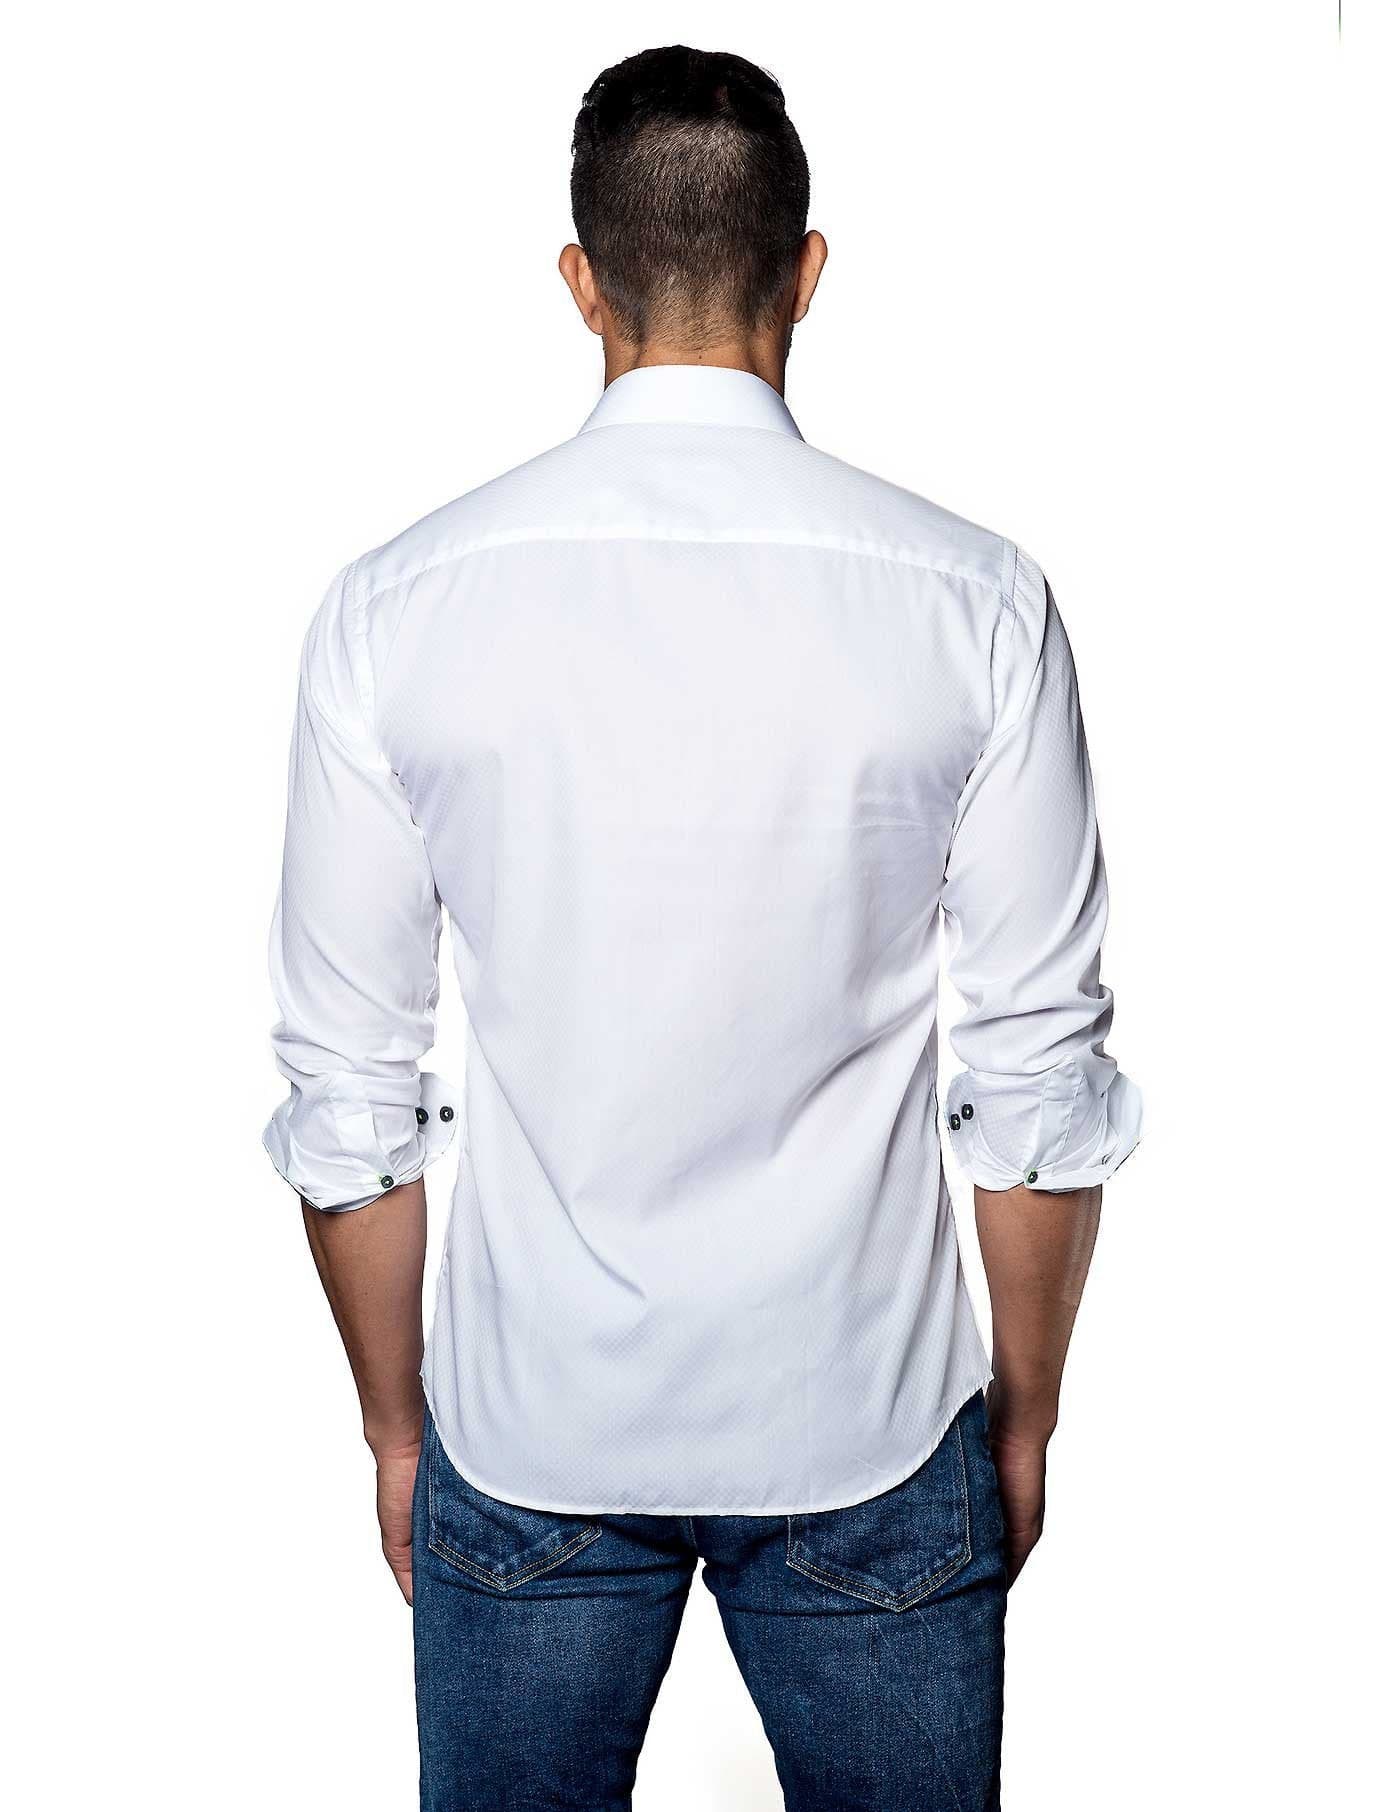 White Solid Damier Jacquard Shirt for Men T-2050 - Back - Jared Lang